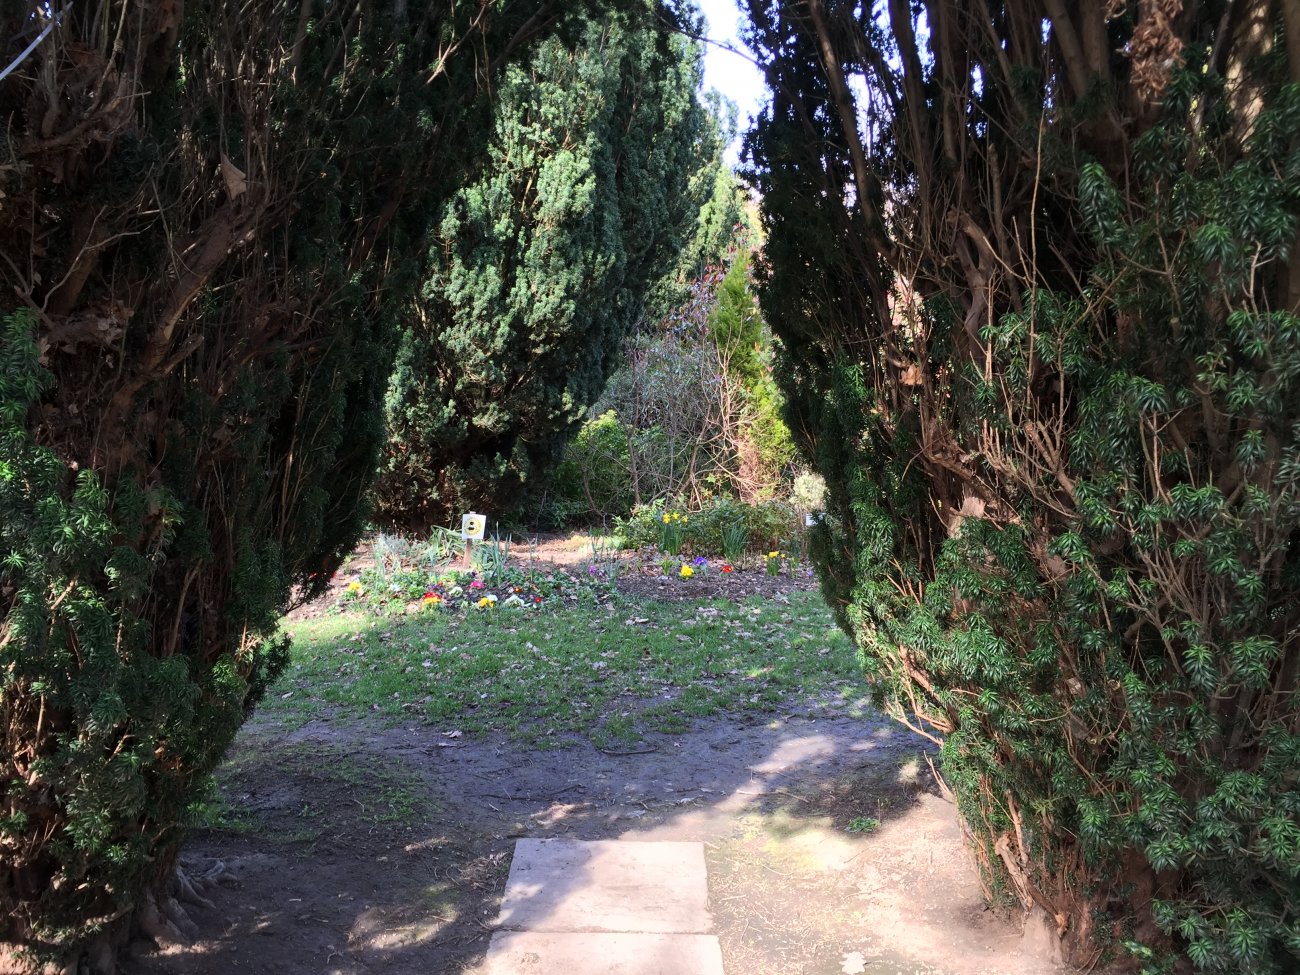 Photograph of Sensory Garden entrance